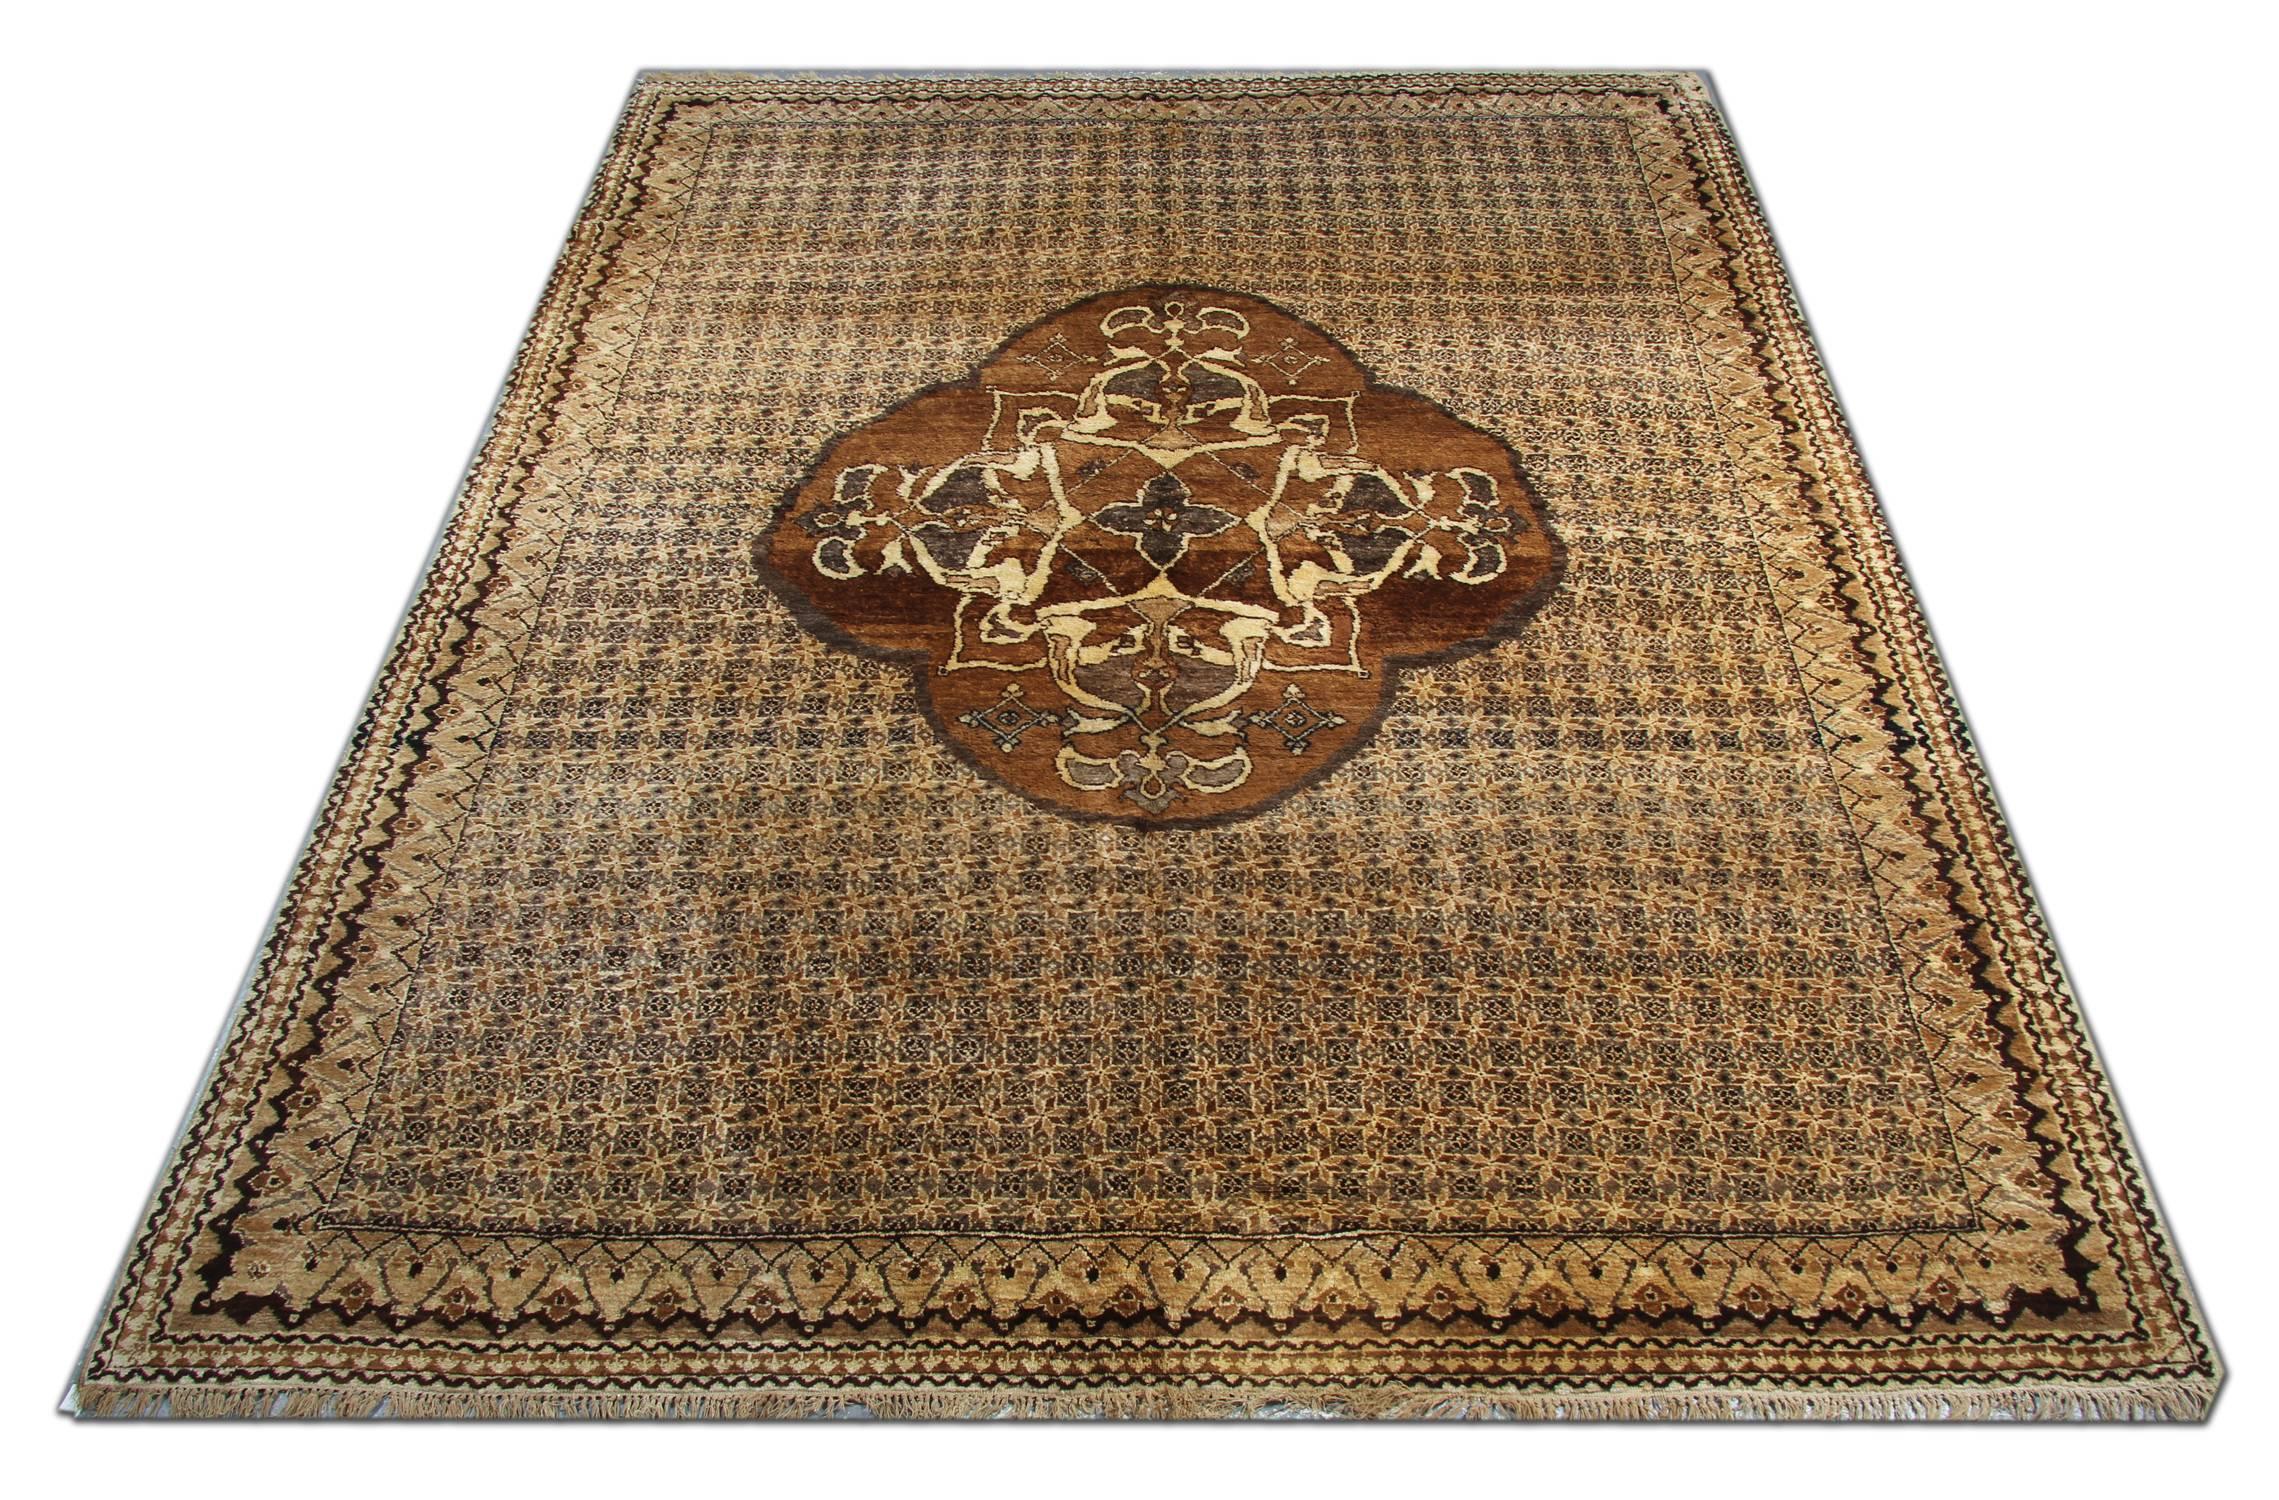 Dieser handgefertigte antike Teppich ist ein türkischer brauner Teppich mit zentralem Medaillon und hellbrauner Hintergrundfarbe. Diese luxuriösen Teppiche würden Ihr Zuhause als Bodenteppiche ergänzen. Diese großen Teppiche sehen wunderschön aus